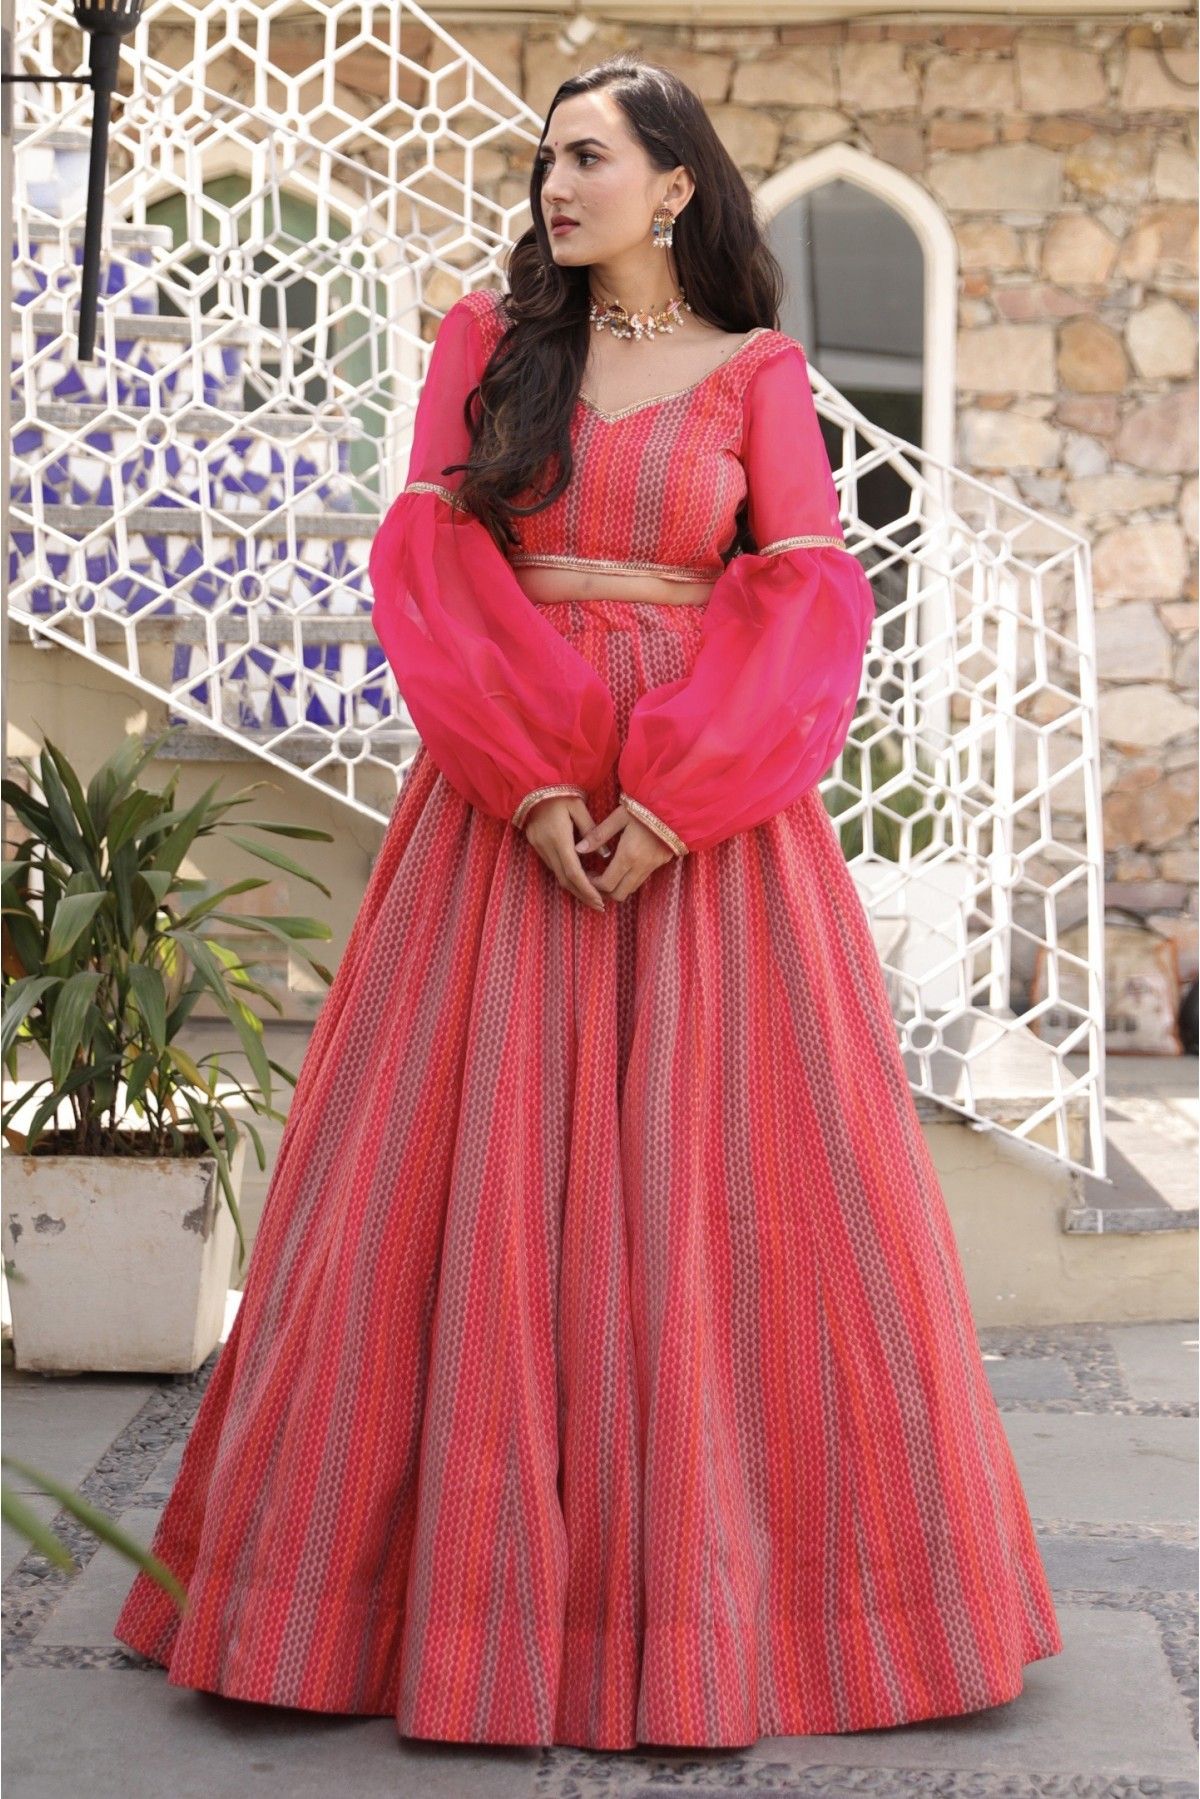 Chanderi Digital Print Lehenga Choli In Pink Colour - LD5410163